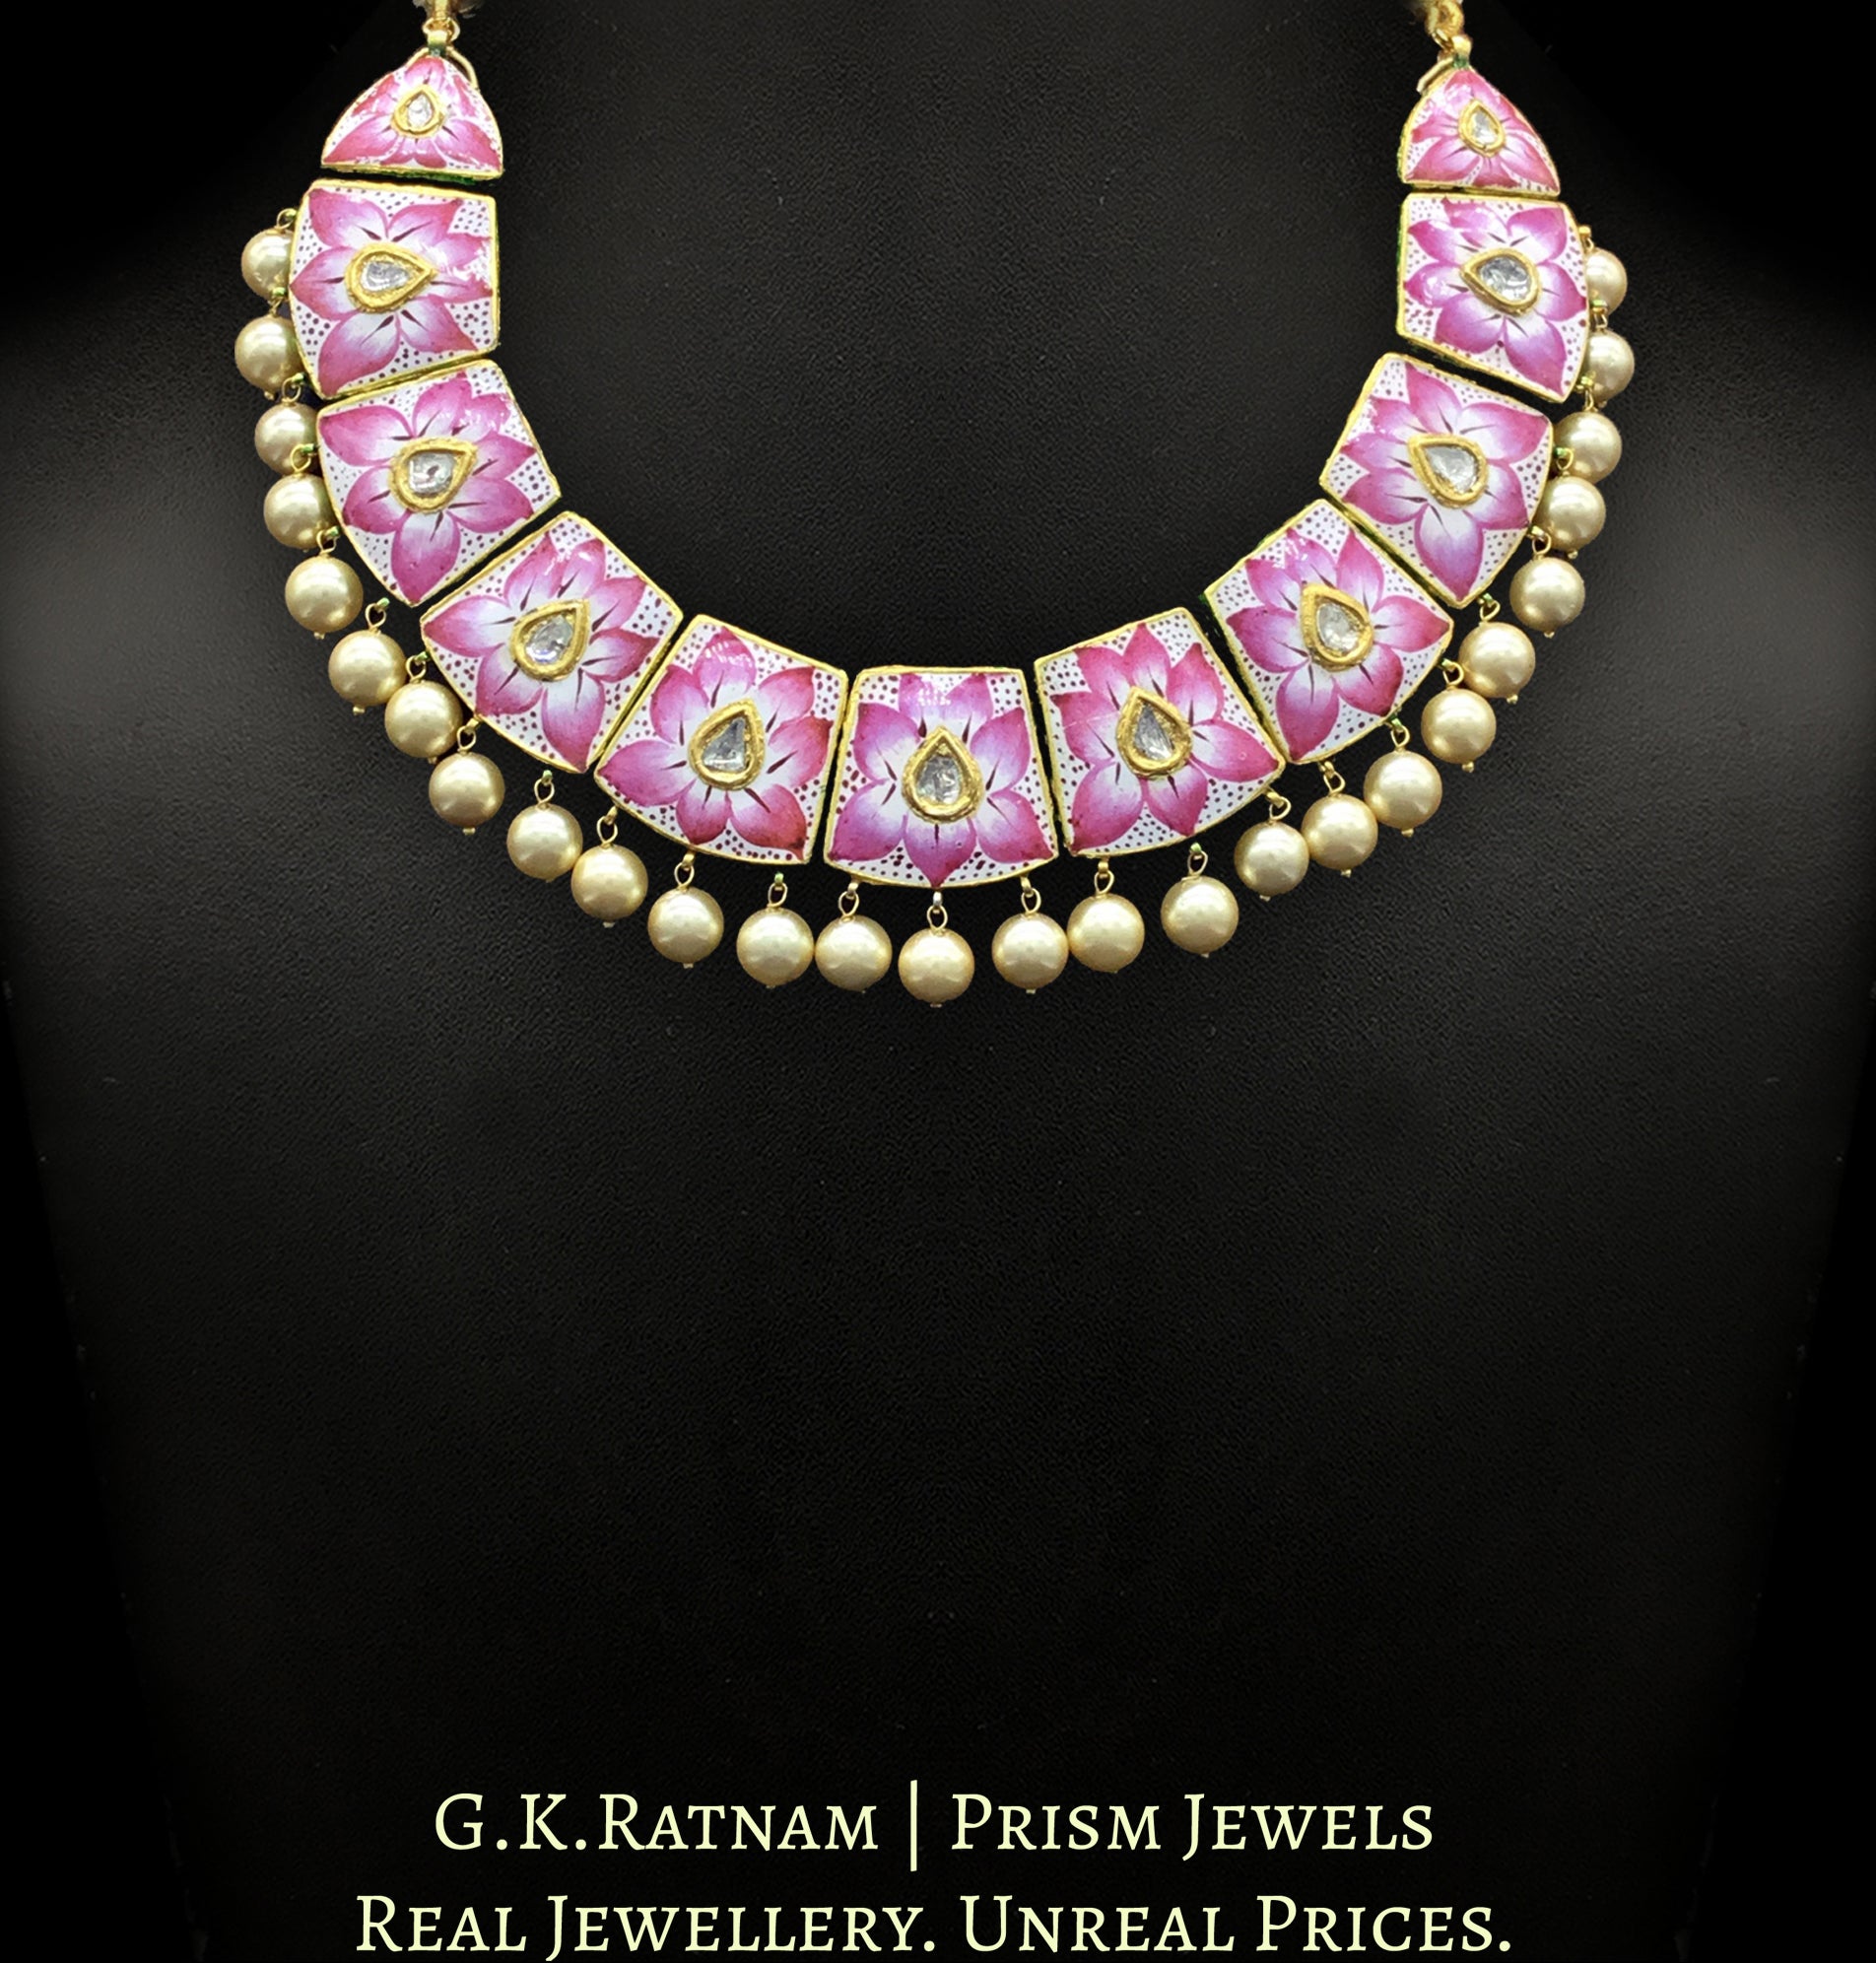 18k Gold and Diamond Polki Pink Enamel Necklace Set with lotus motifs - G. K. Ratnam